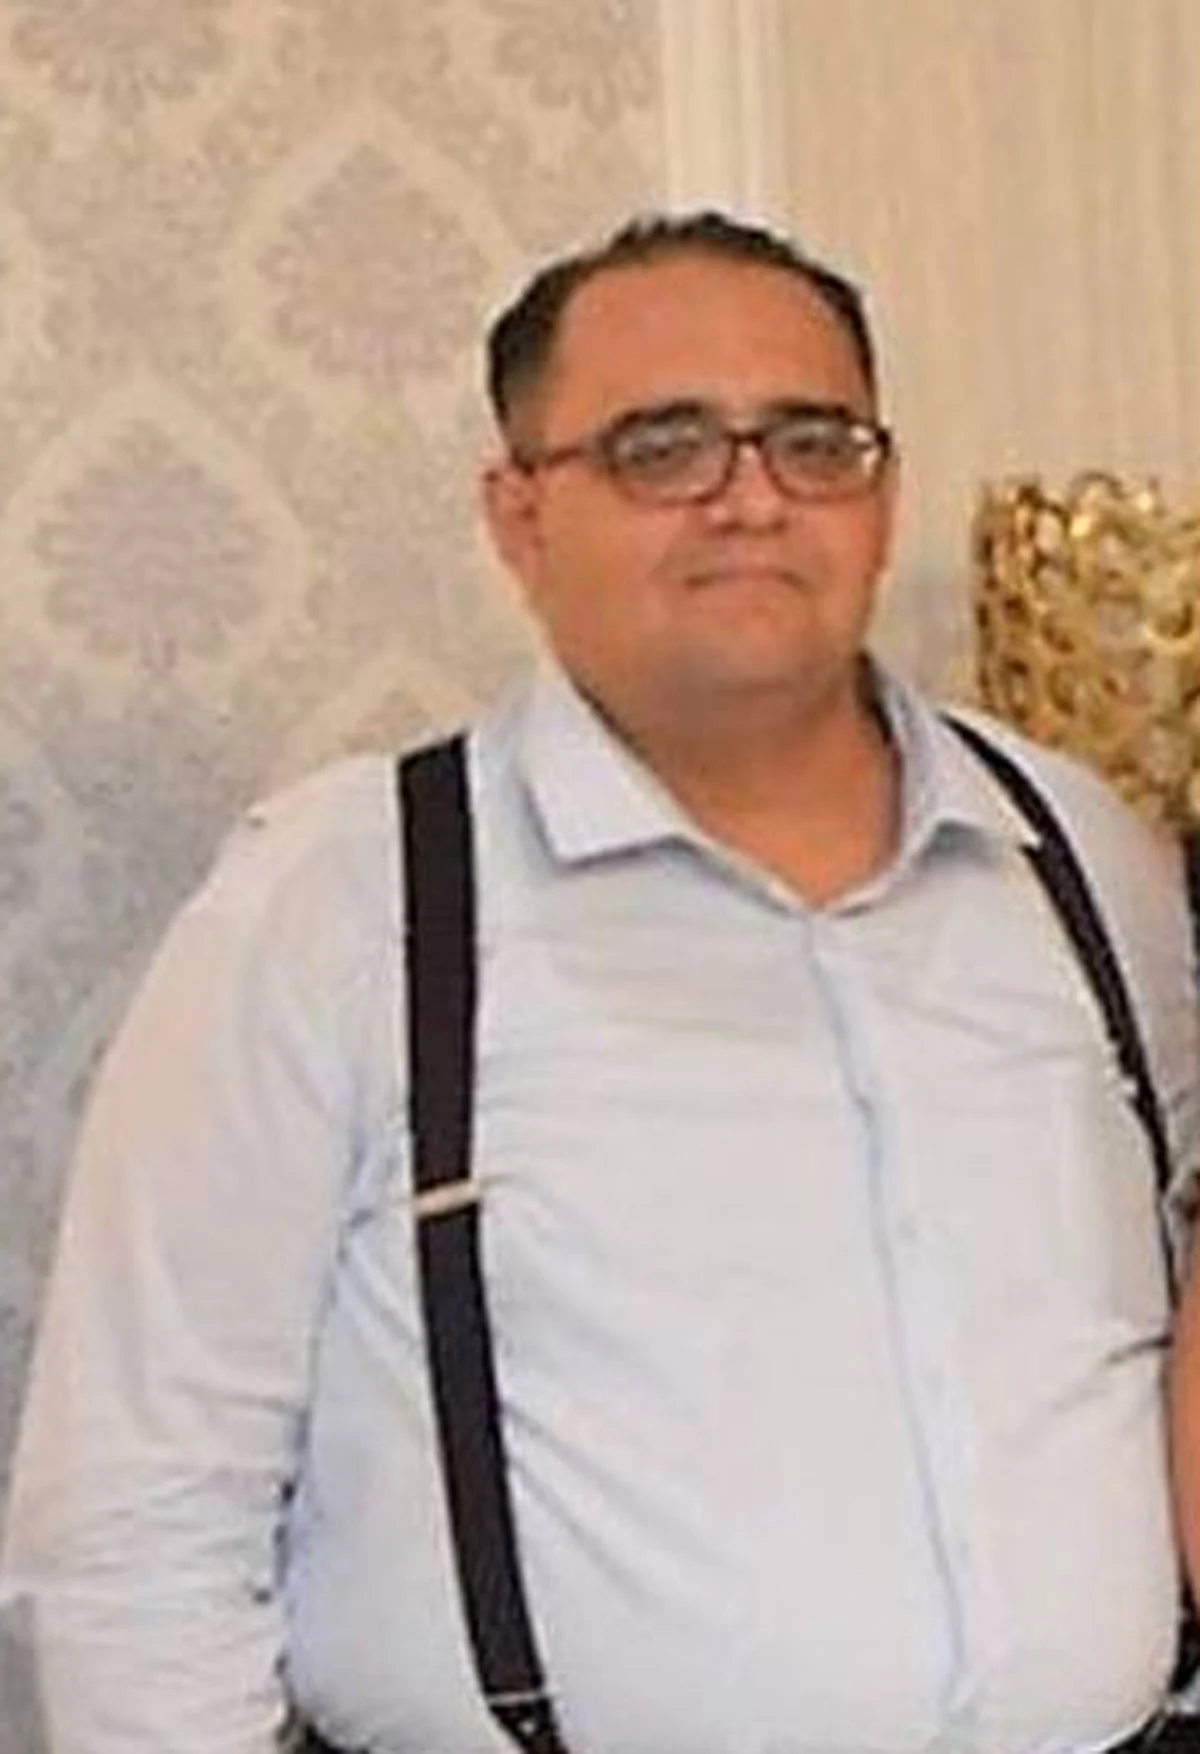 Alanya'da Cumhuriyet savcısının otel odasında cansız bedeni bulundu